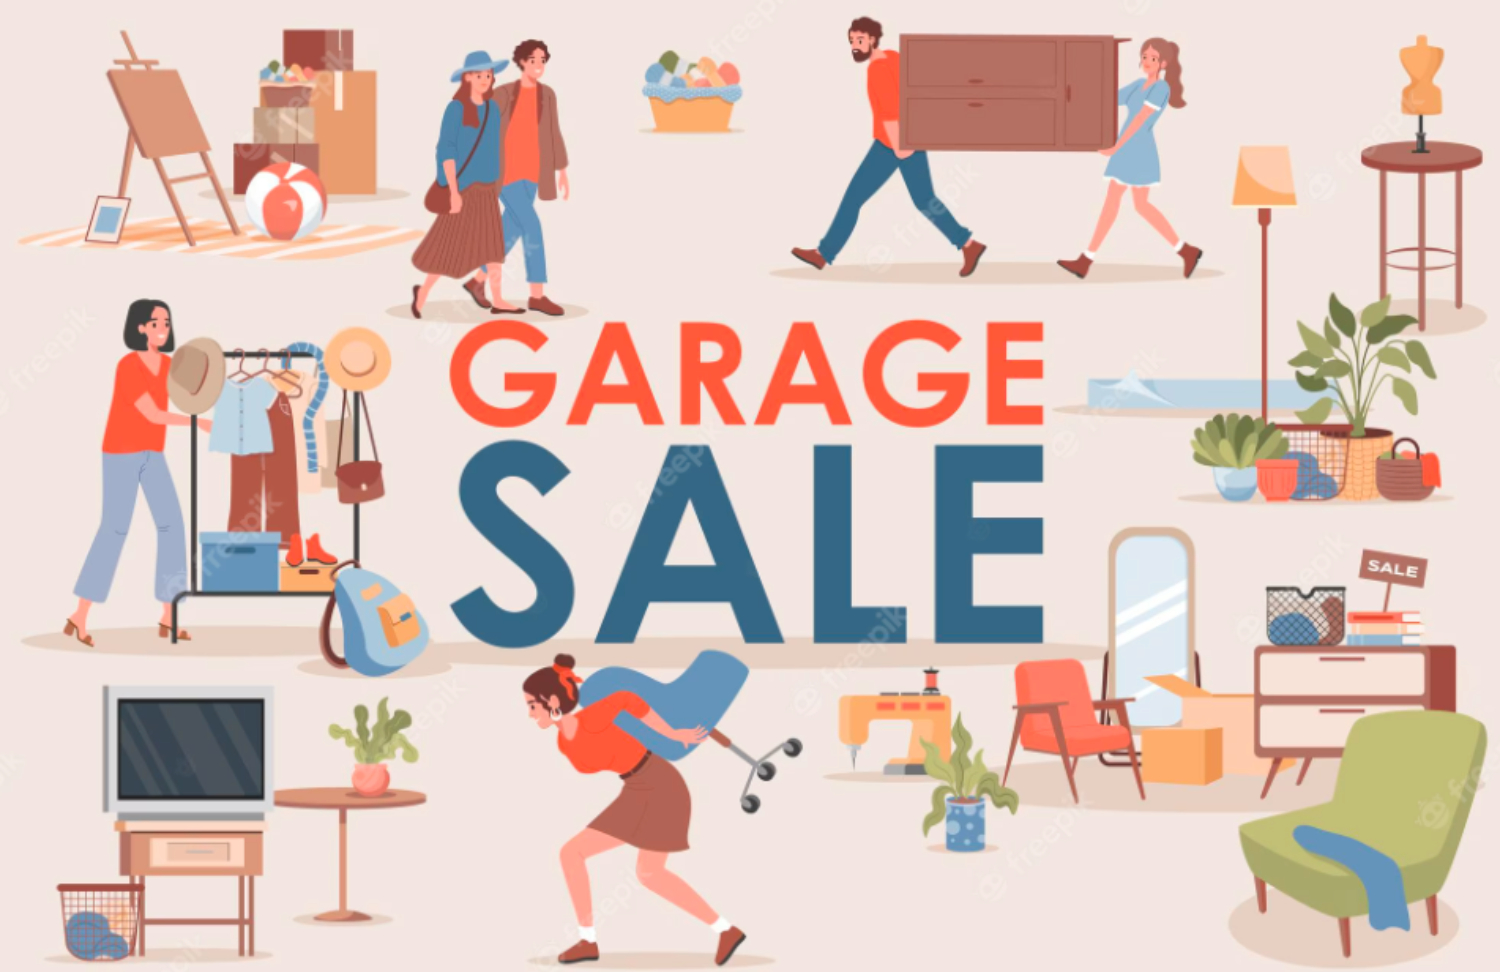 Garage sales